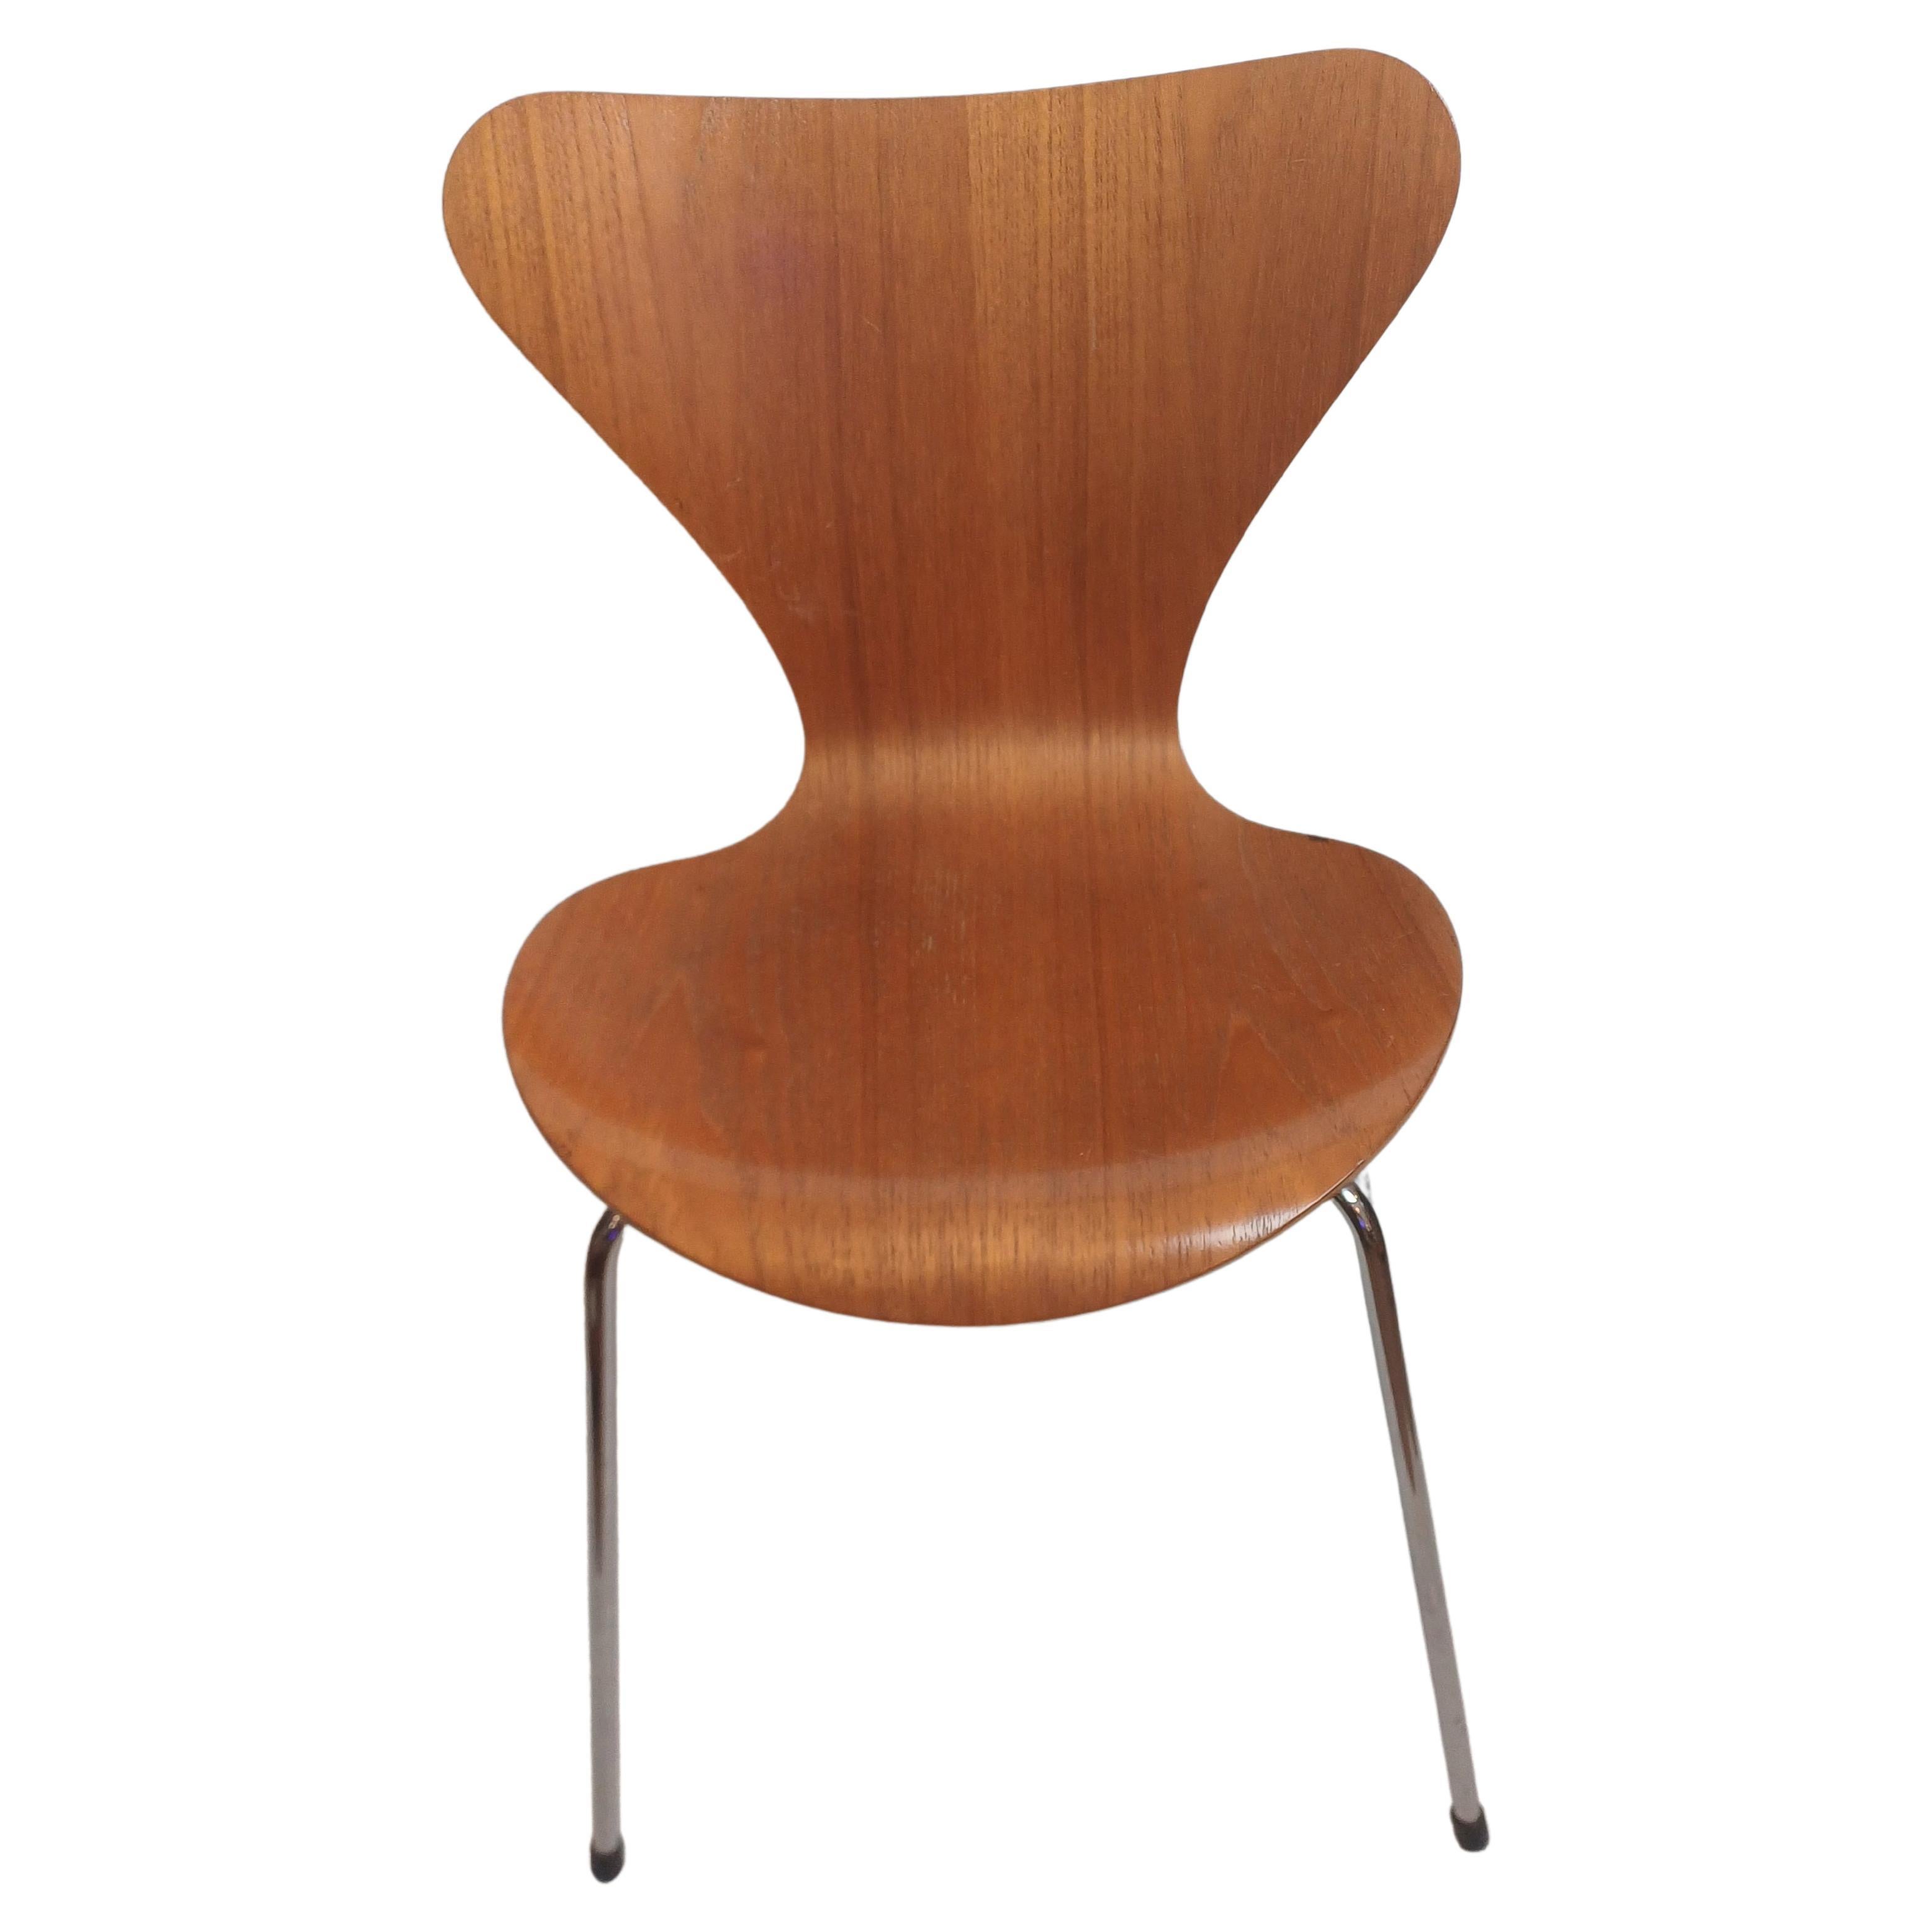 Chaise No. 1 SERIES 7 conçue par Arne Jacobsen en 1955 et produite au Danemark par Fritz Hansen en 1992 (étiquetée). Structure plaquée de contreplaqué courbé, pieds en acier chromé. En bon état, avec quelques petites traces d'utilisation comme on